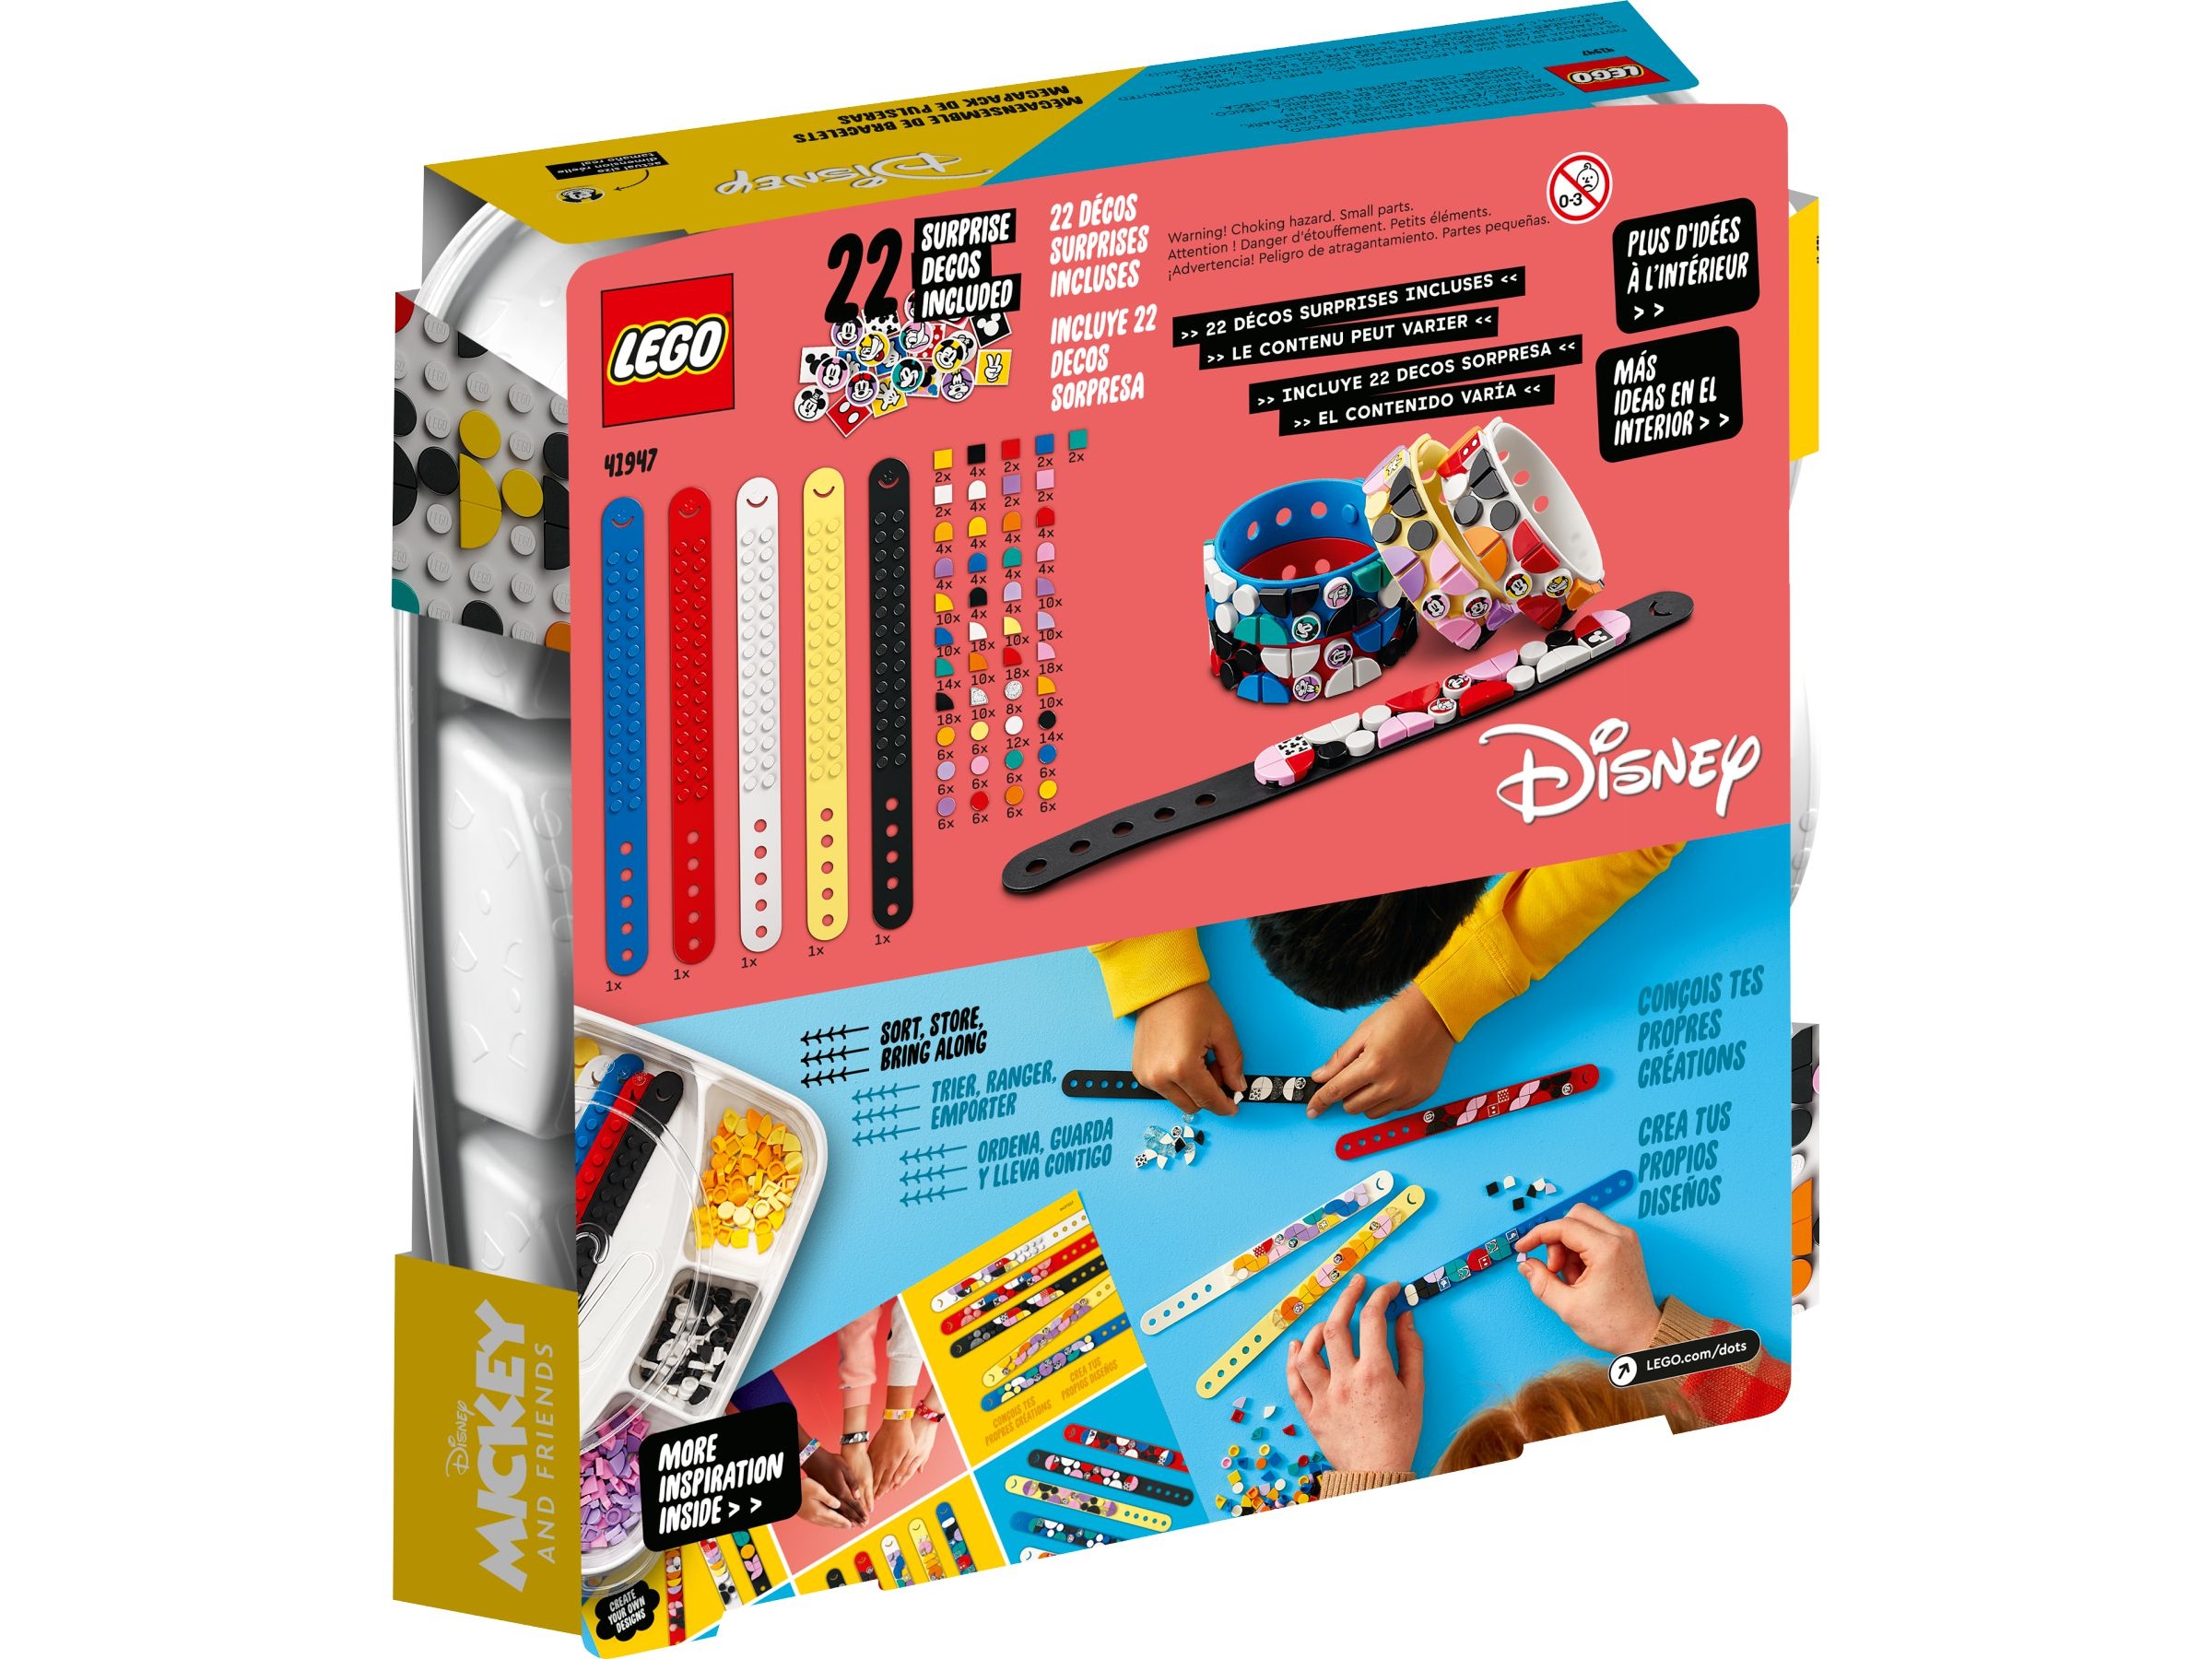 Lego DOTS - Miki i przyjaciele - megazestaw (41947)